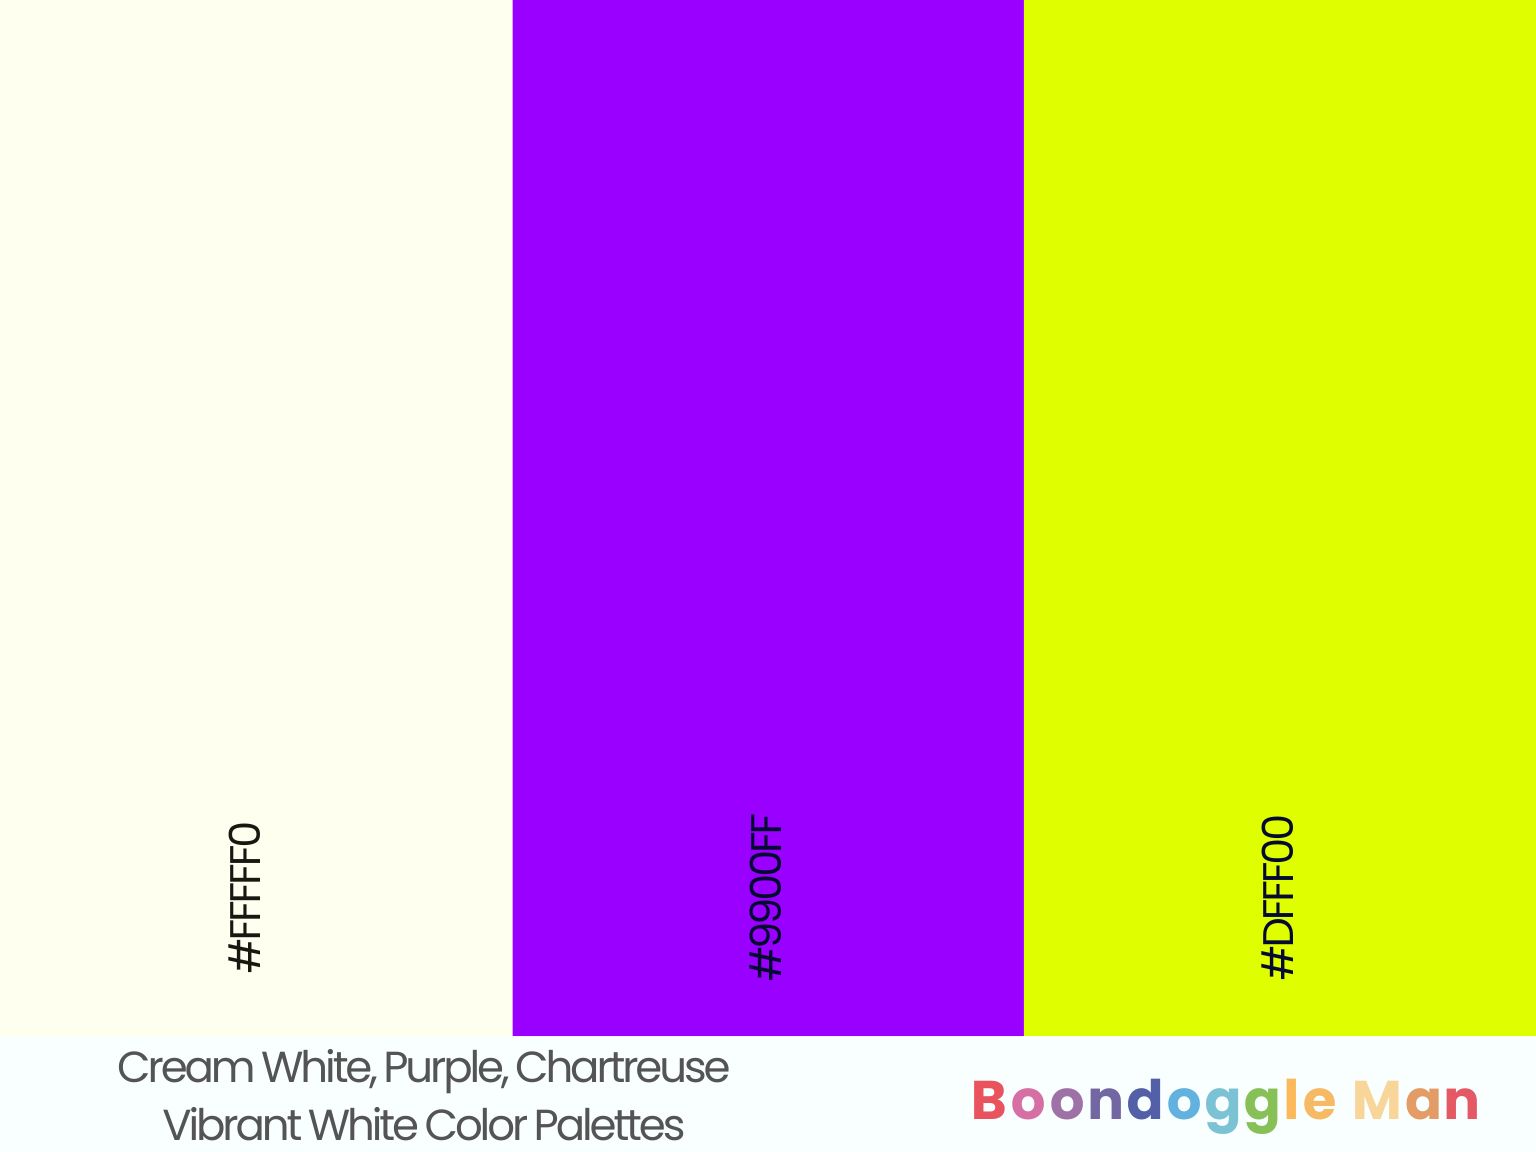 Cream White, Purple, Chartreuse